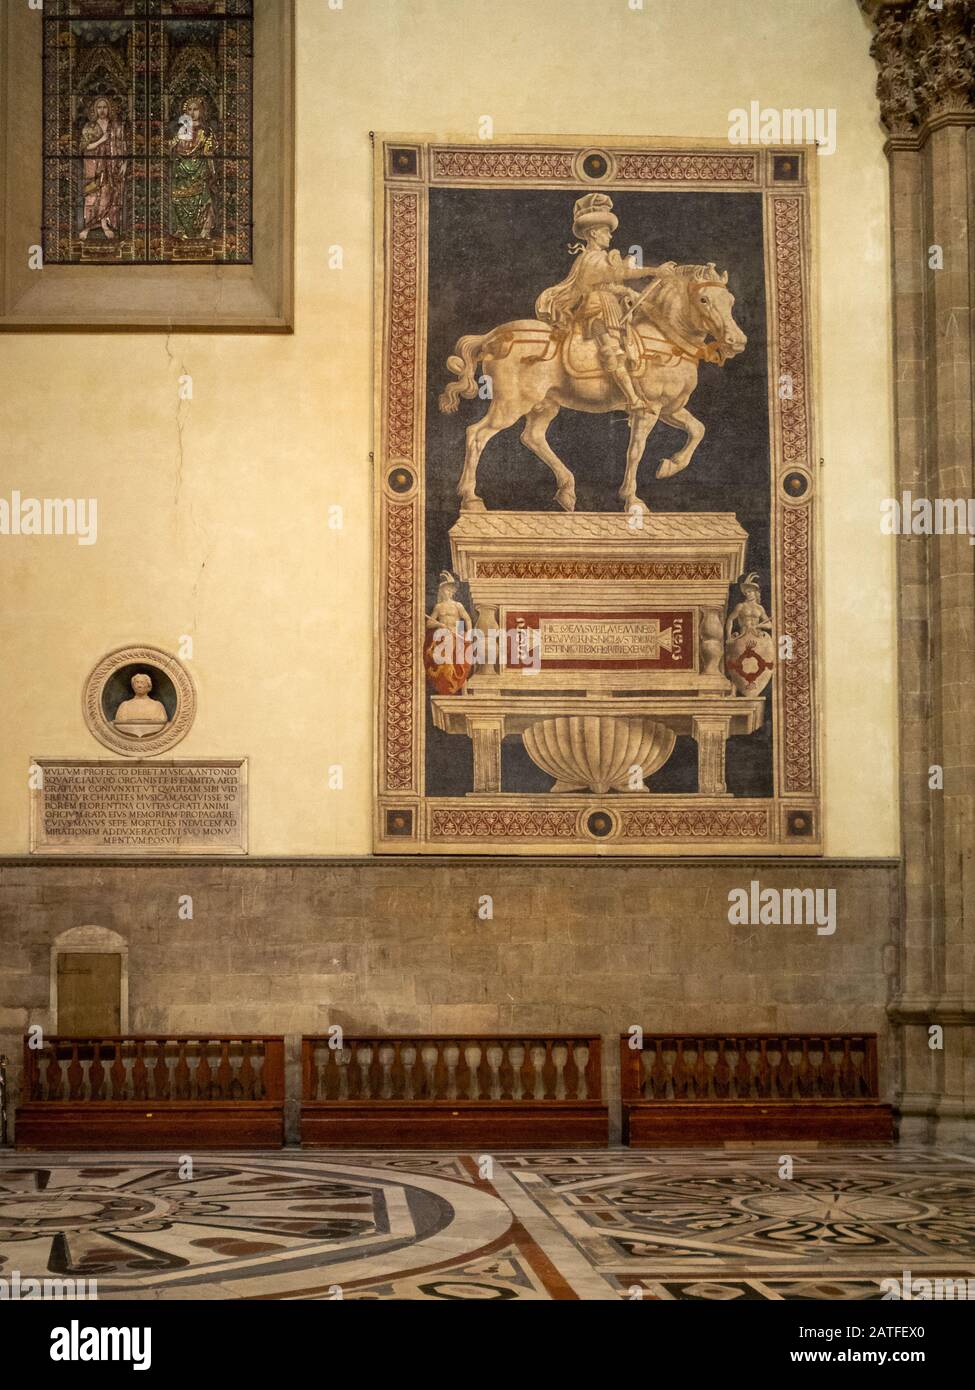 Equestrian Monument of Niccolò da Tolentino, fresco by Andrea del Castagno, Florence Duomo Stock Photo